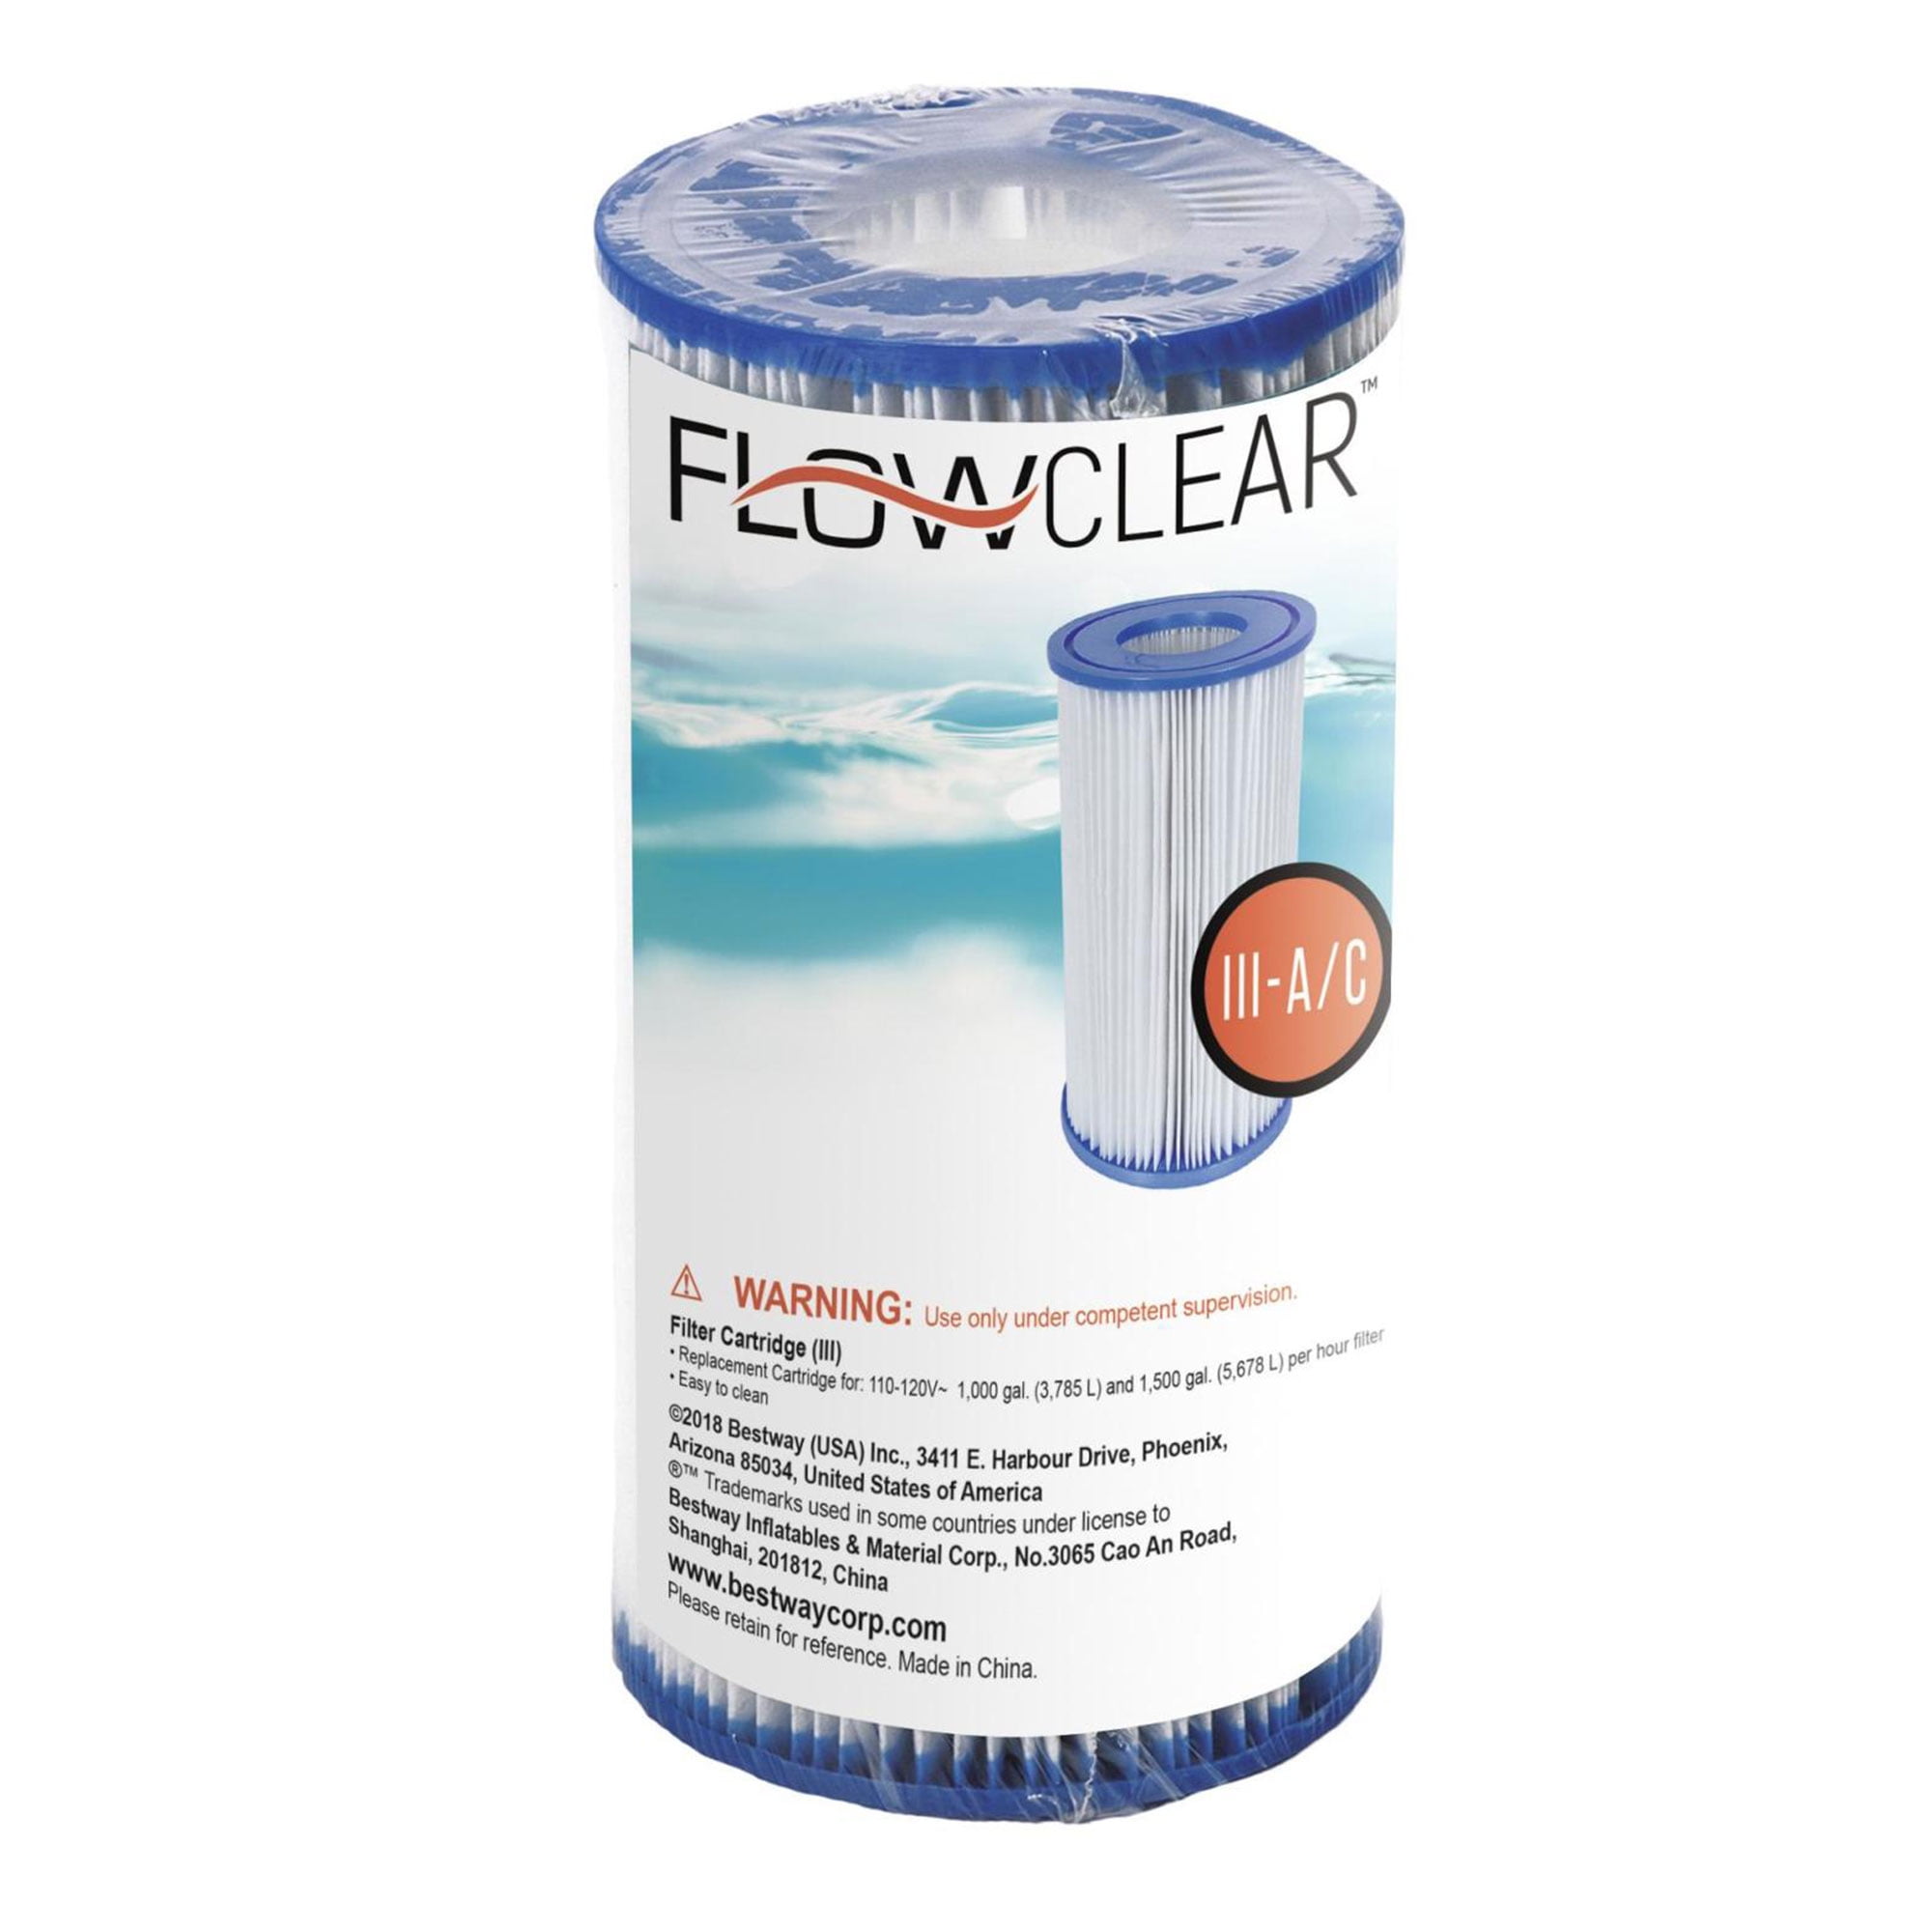 Вкладыш фильтра. Картридж фильтра Flowclear ™ # 58012. Flowclear картридж для фильтра Тип 1. Flowclear картридж для фильтра 58093. Flowclear фильтр.